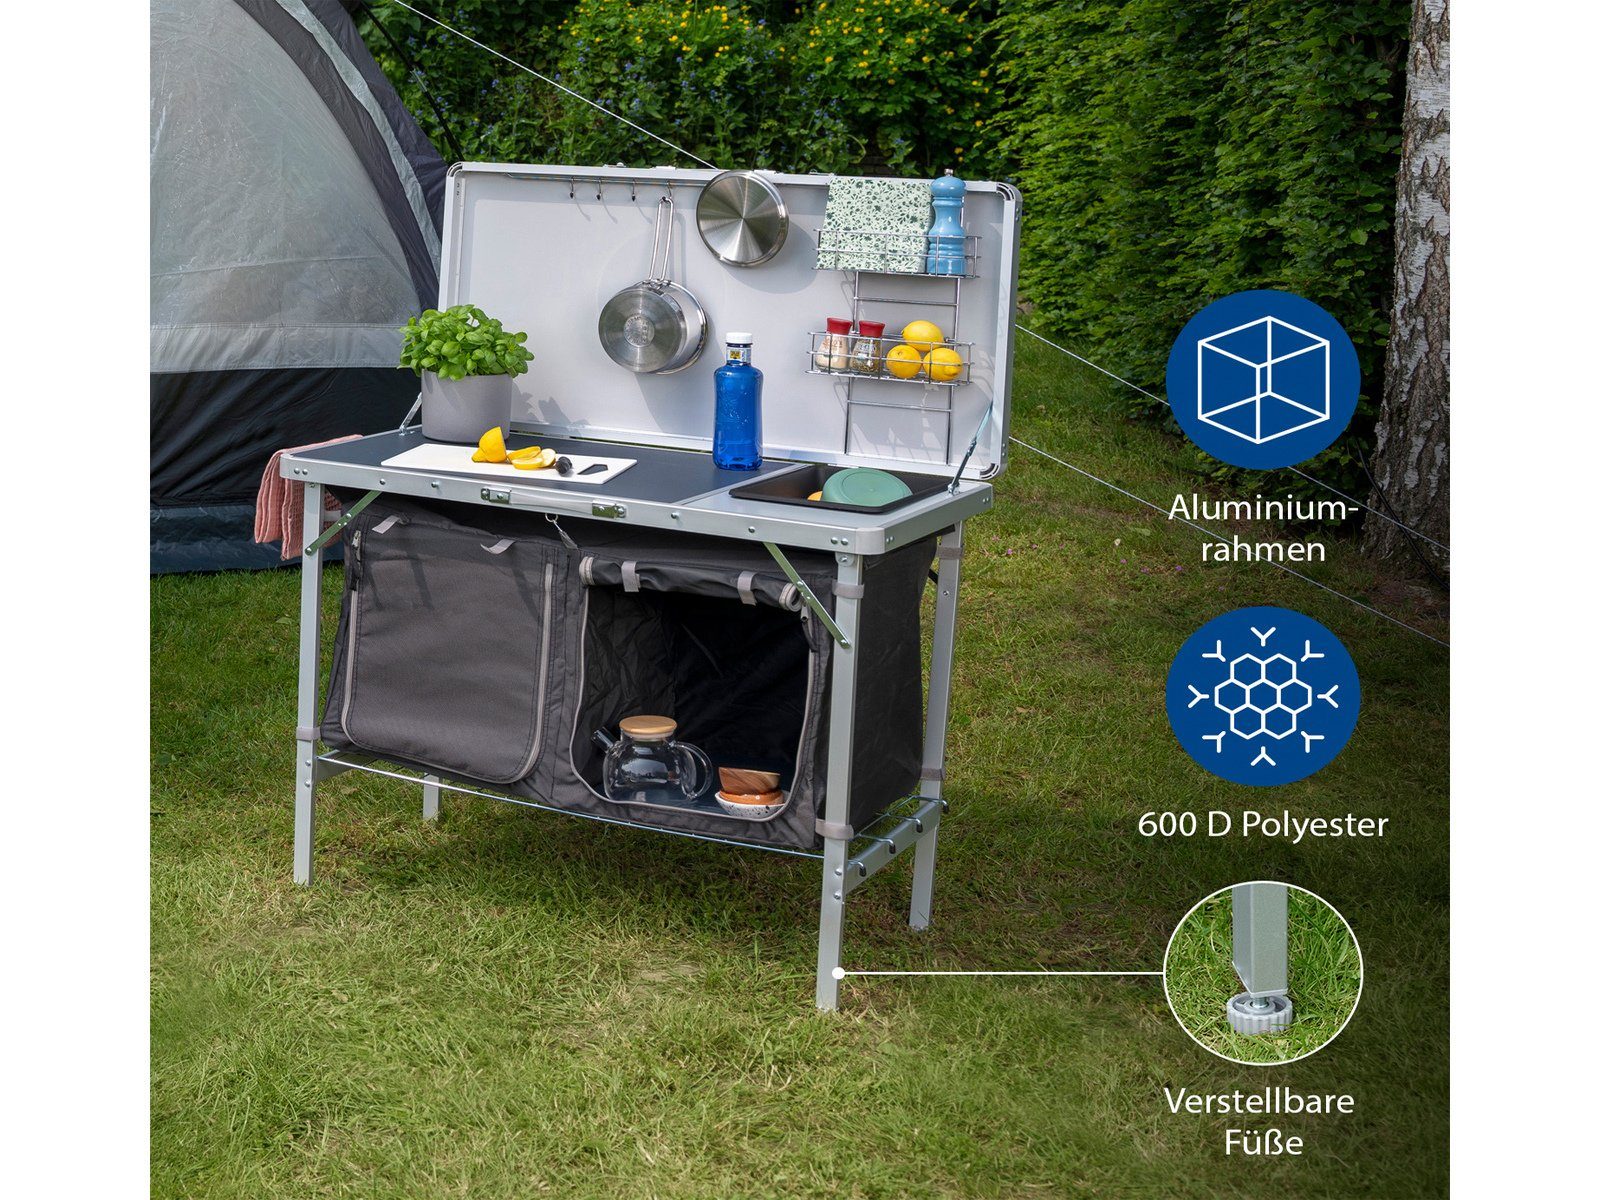 Spüle Küchenschrank faltbar Küchenbox mit Campart Outdoor mobile Spülenschrank Camper Küche